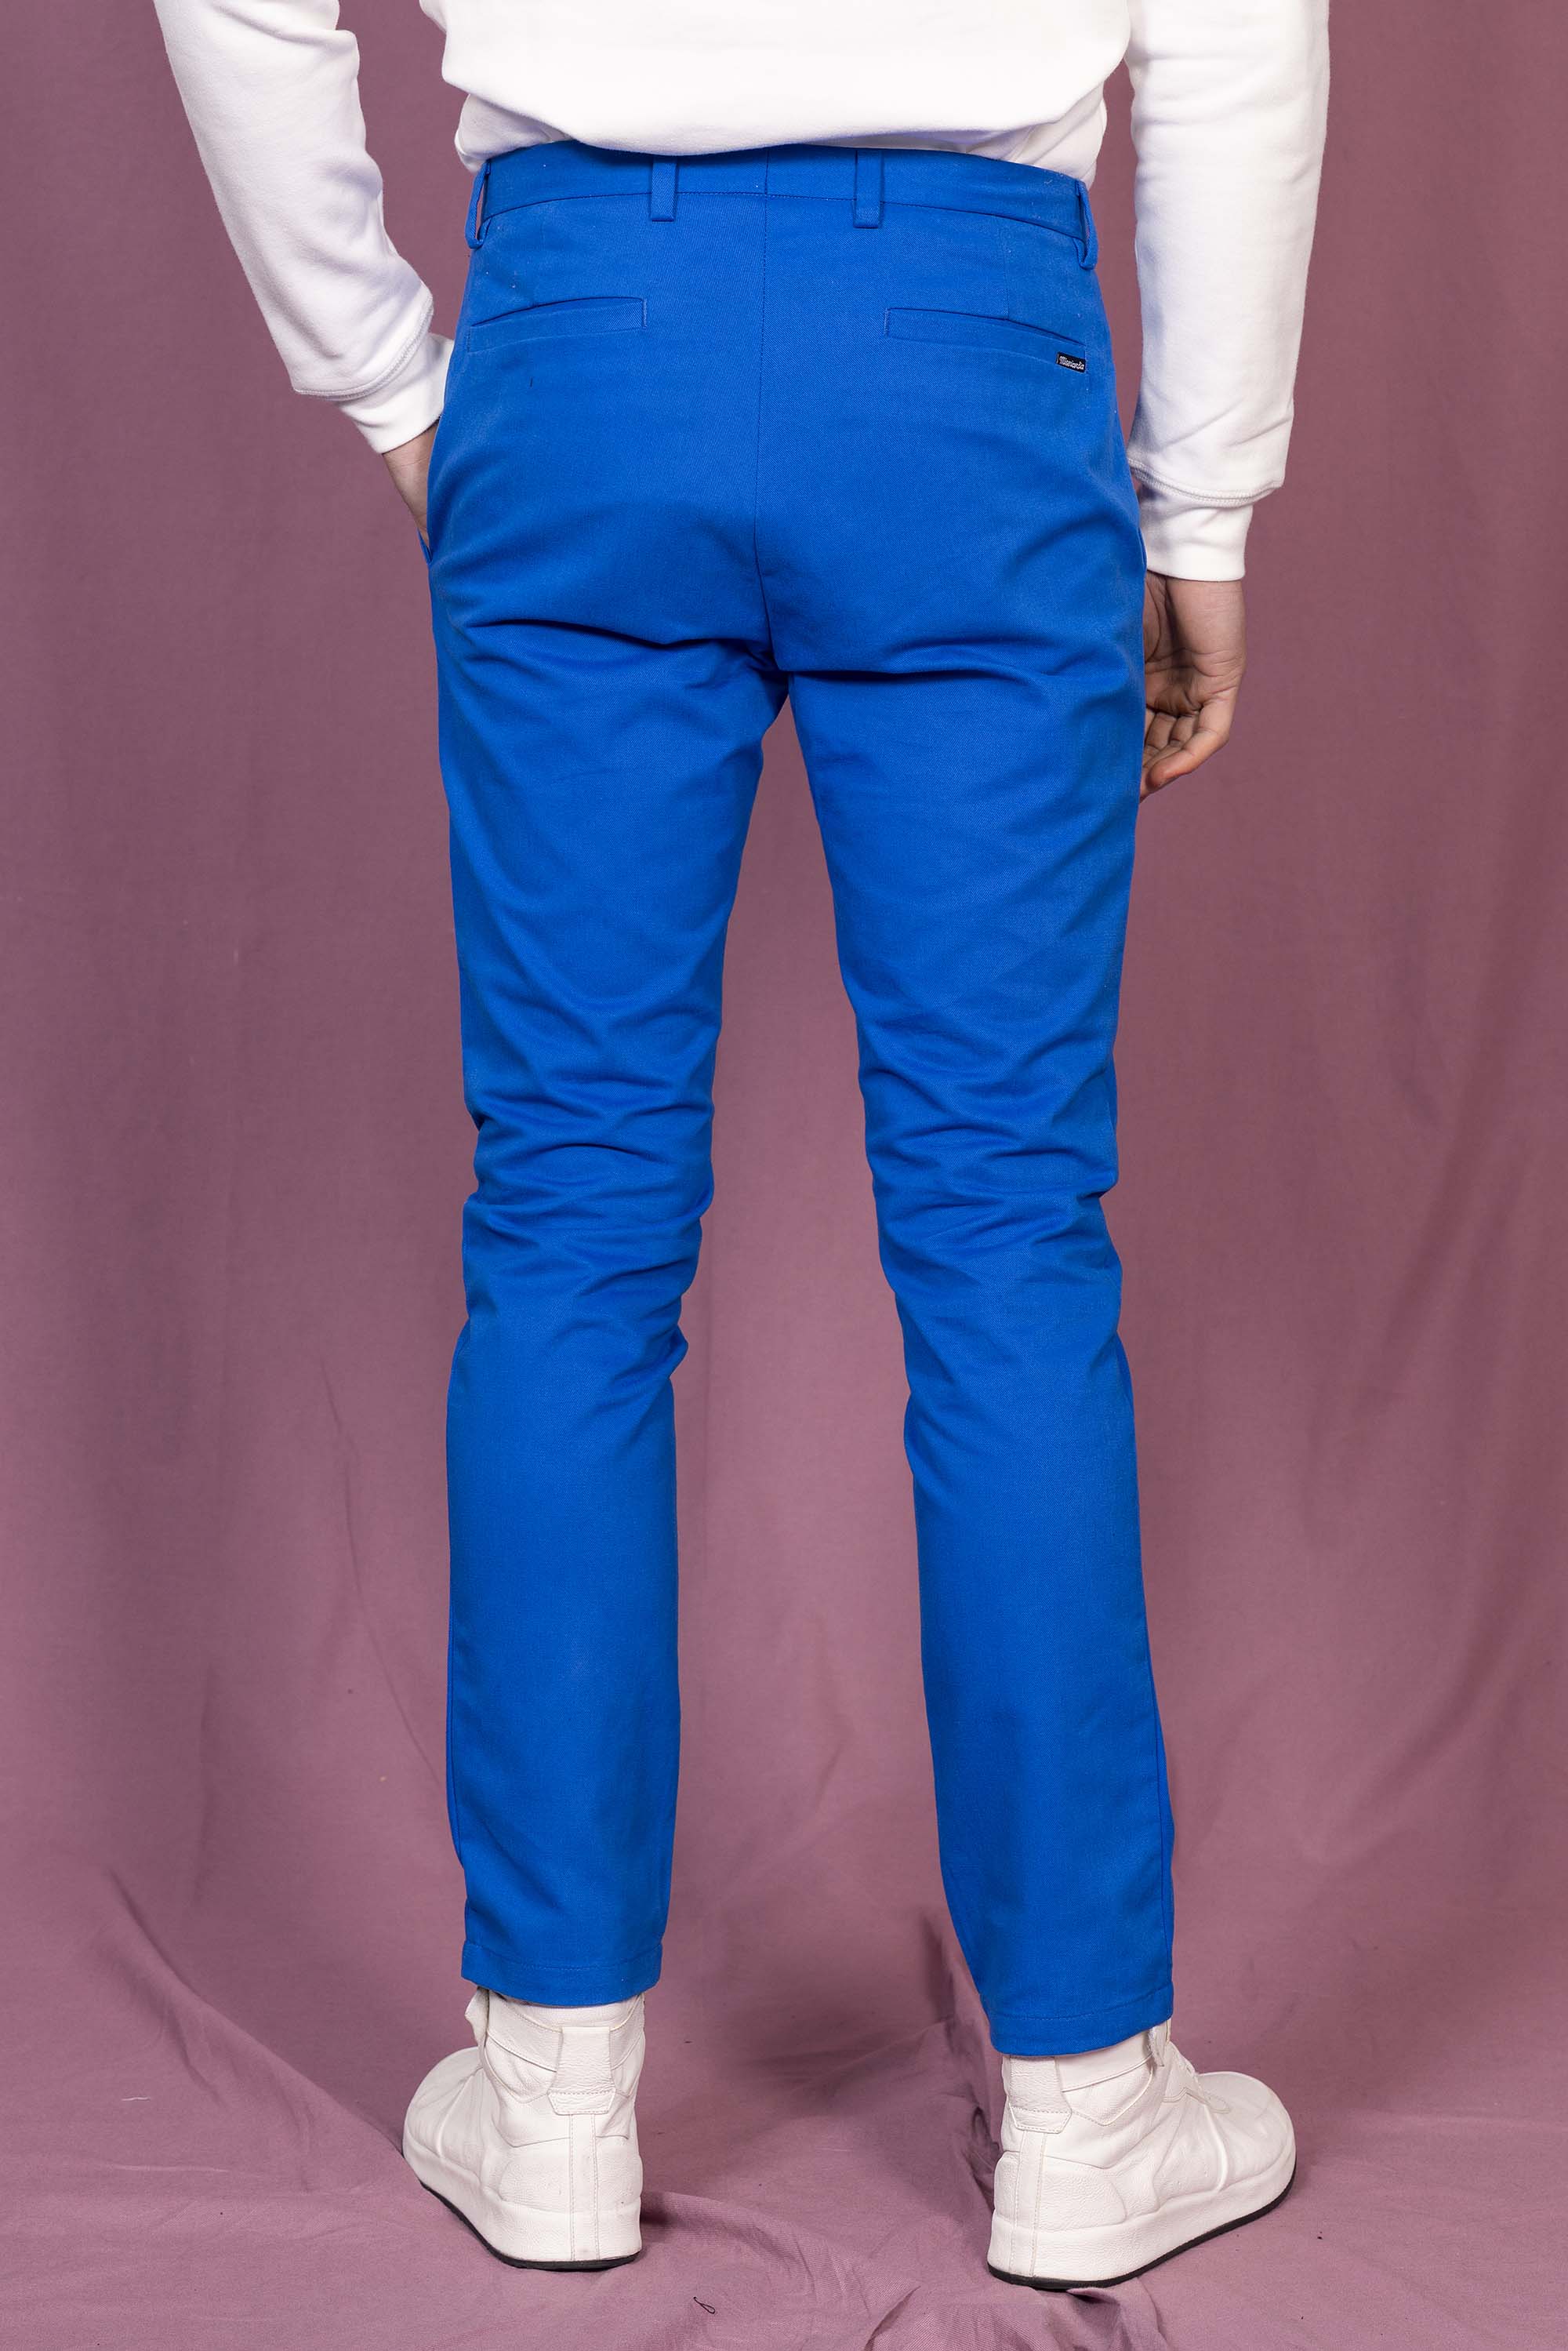 Pantalon General Bleu Saphir prendre le chemin de l'élégance